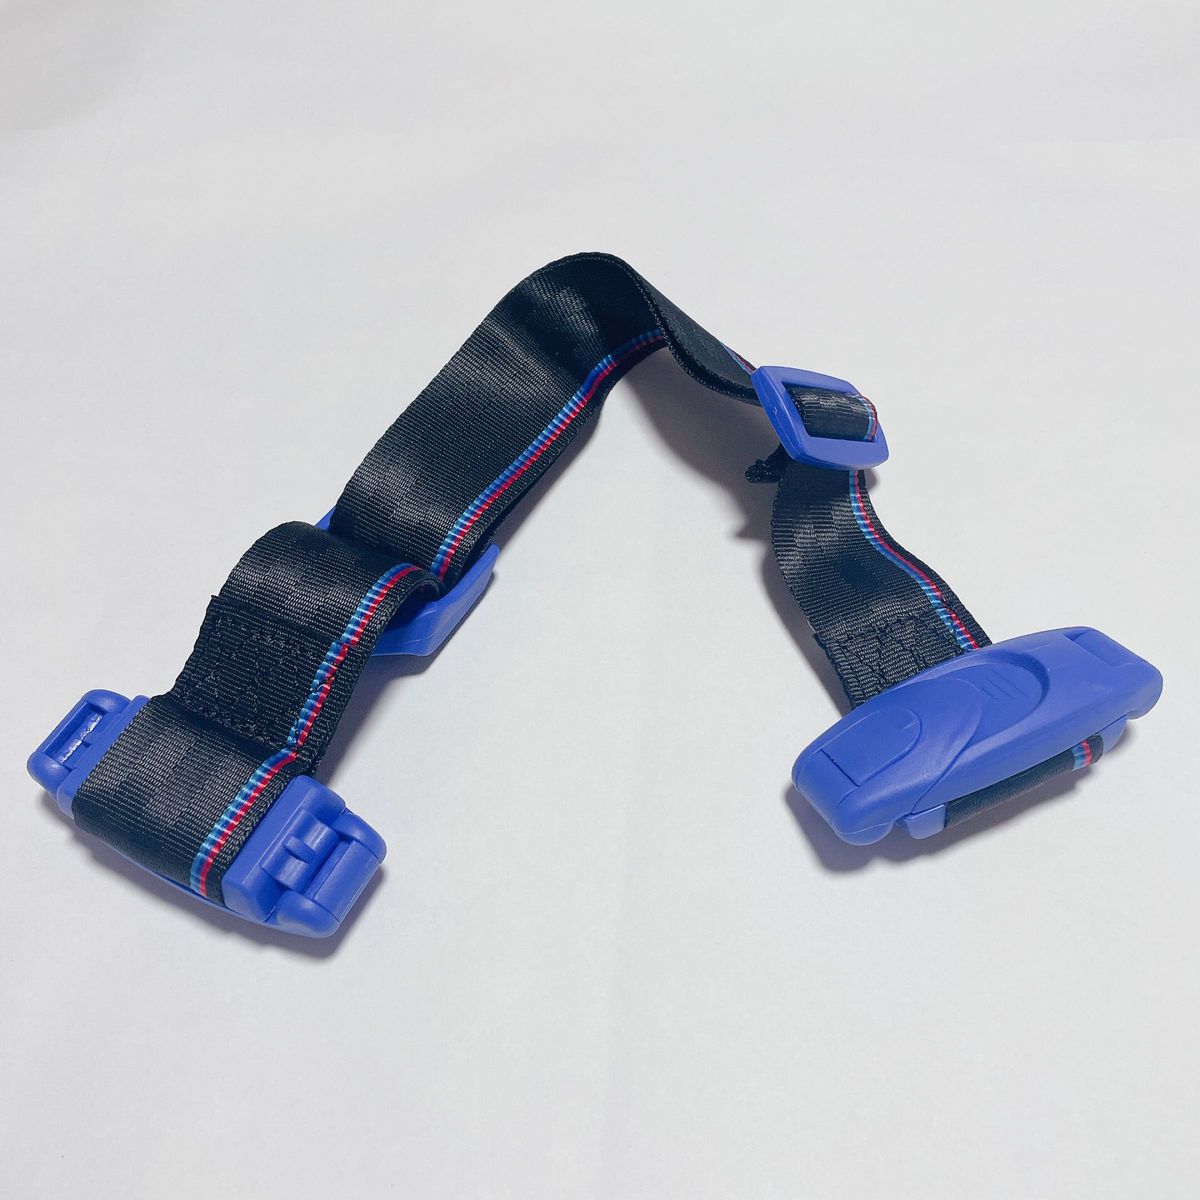 キッズ シートベルト チャイルド 安全 補助 子ども用 取り付け簡単 青 ブルー